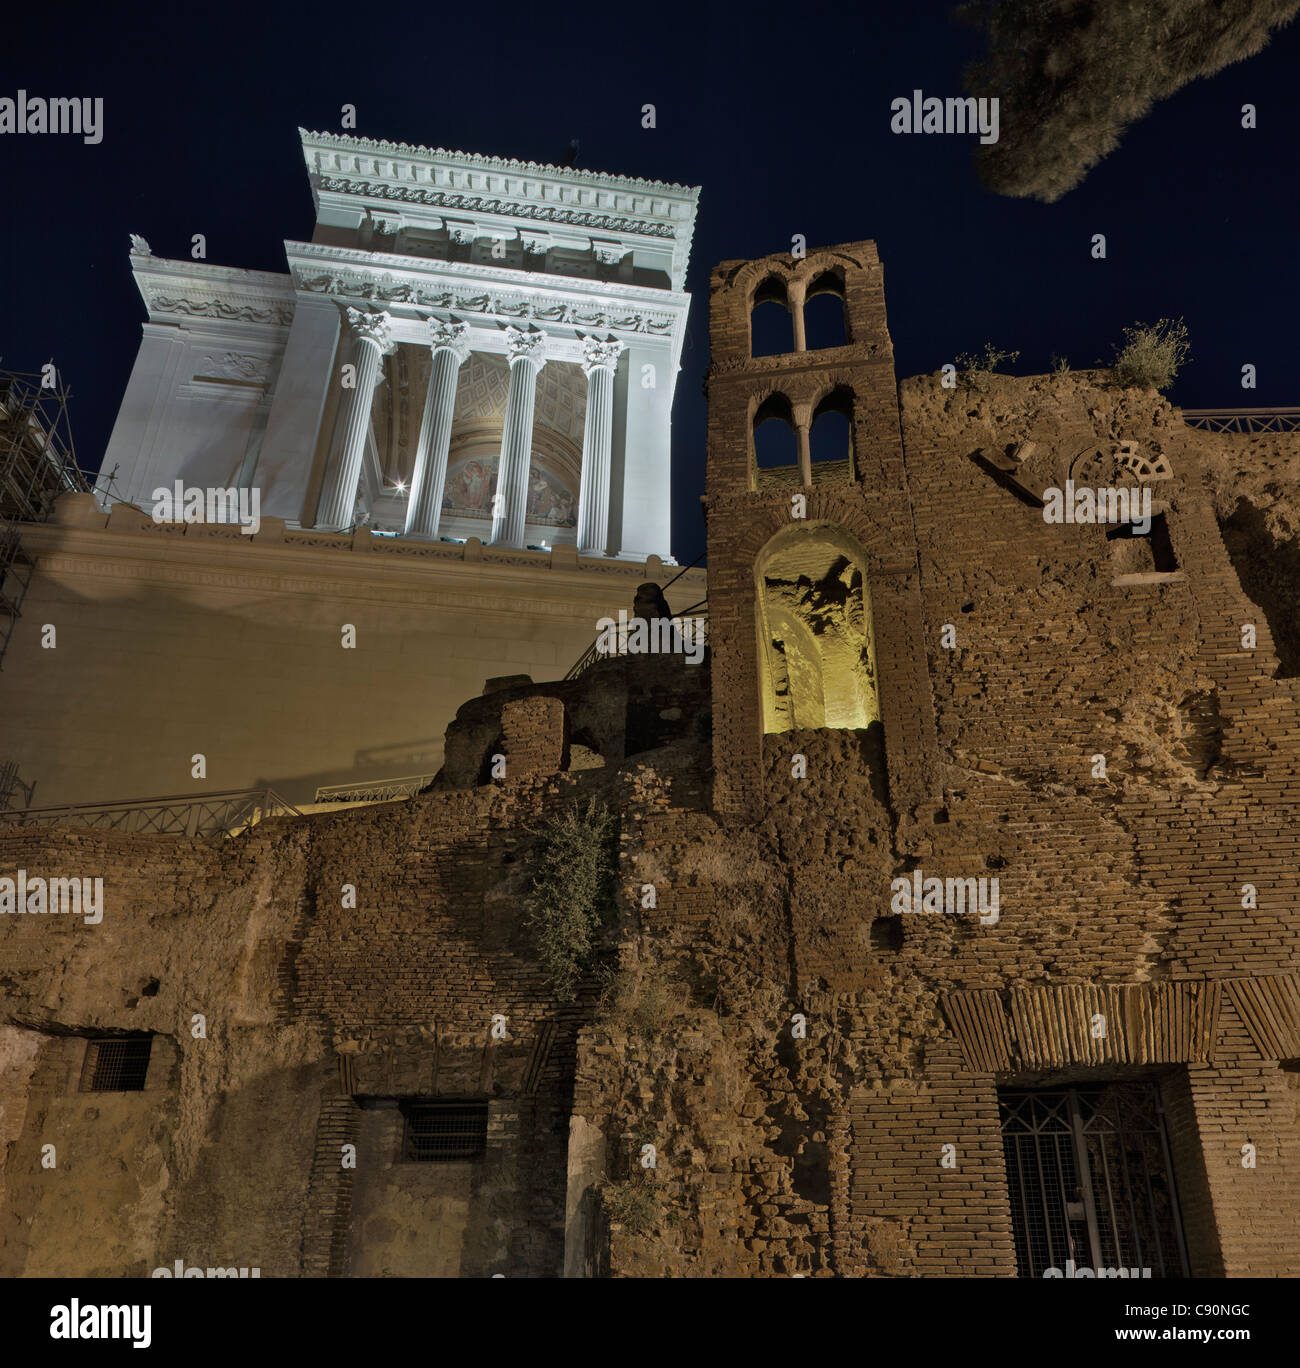 Monument of Vittorio Emanuele II at night, Roma, Latium, Italy Stock Photo